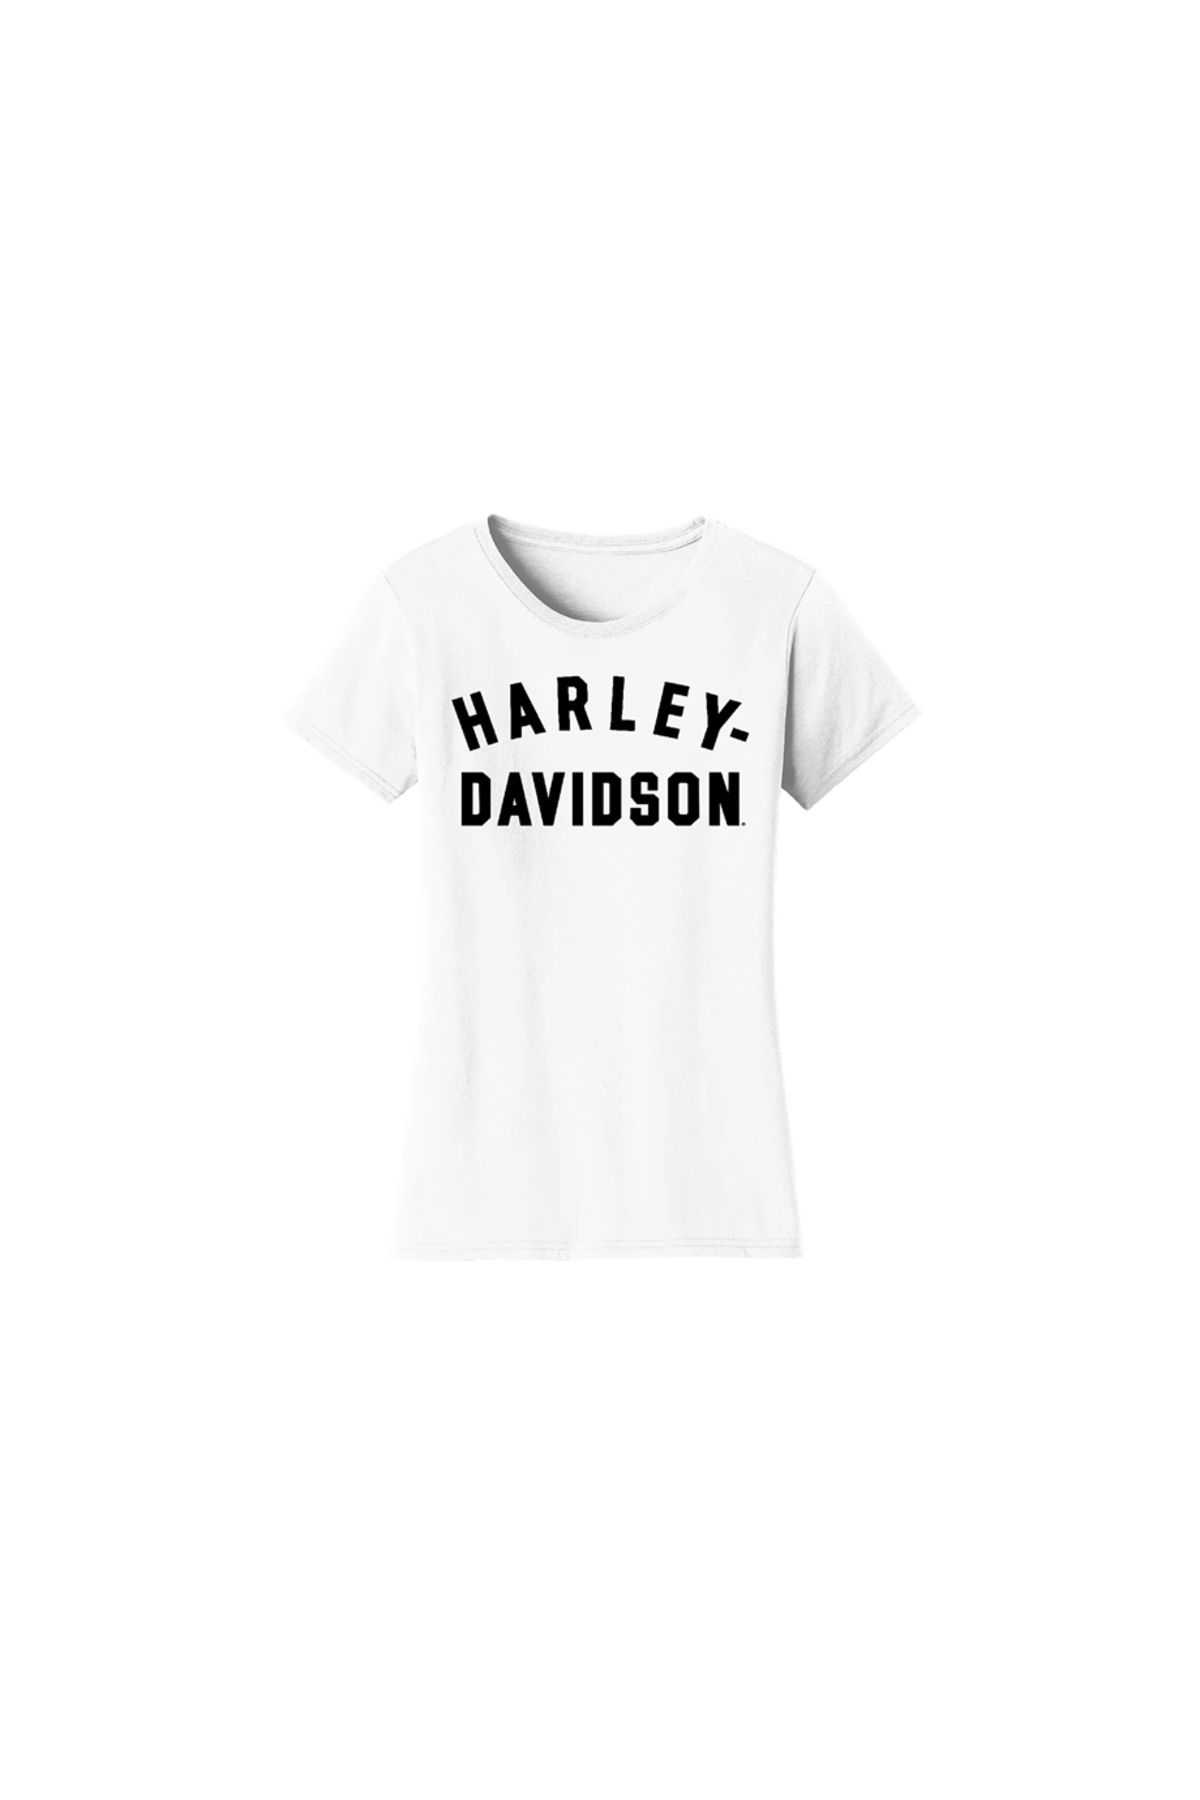 Harley Davidson Harley-davidson Women's Forever Racer Font Tee - Bright White